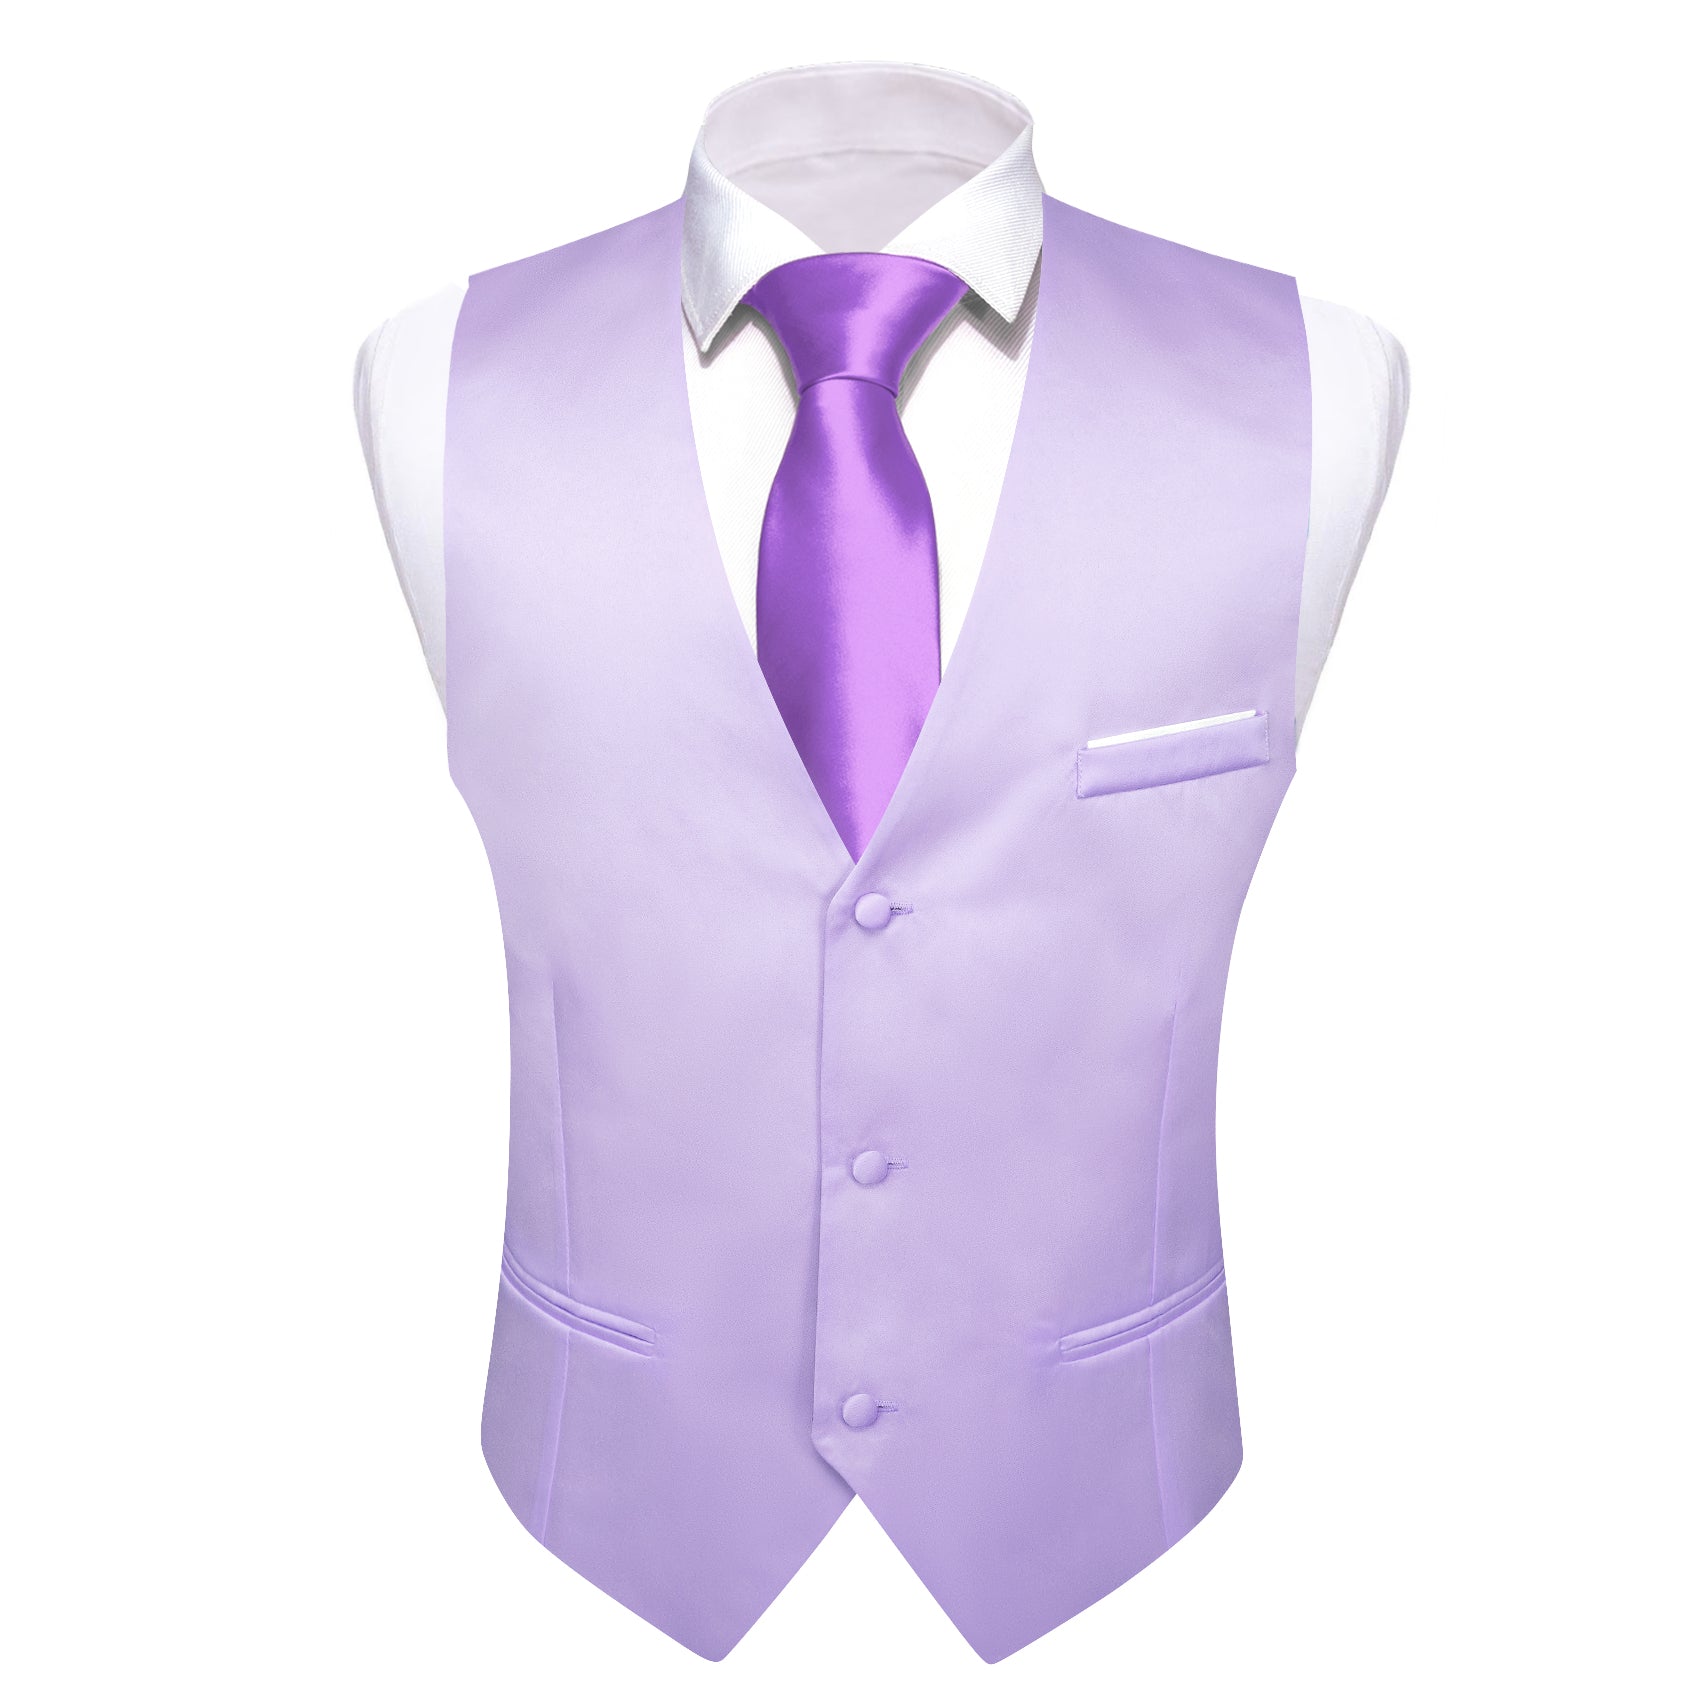 mens suit vest styles